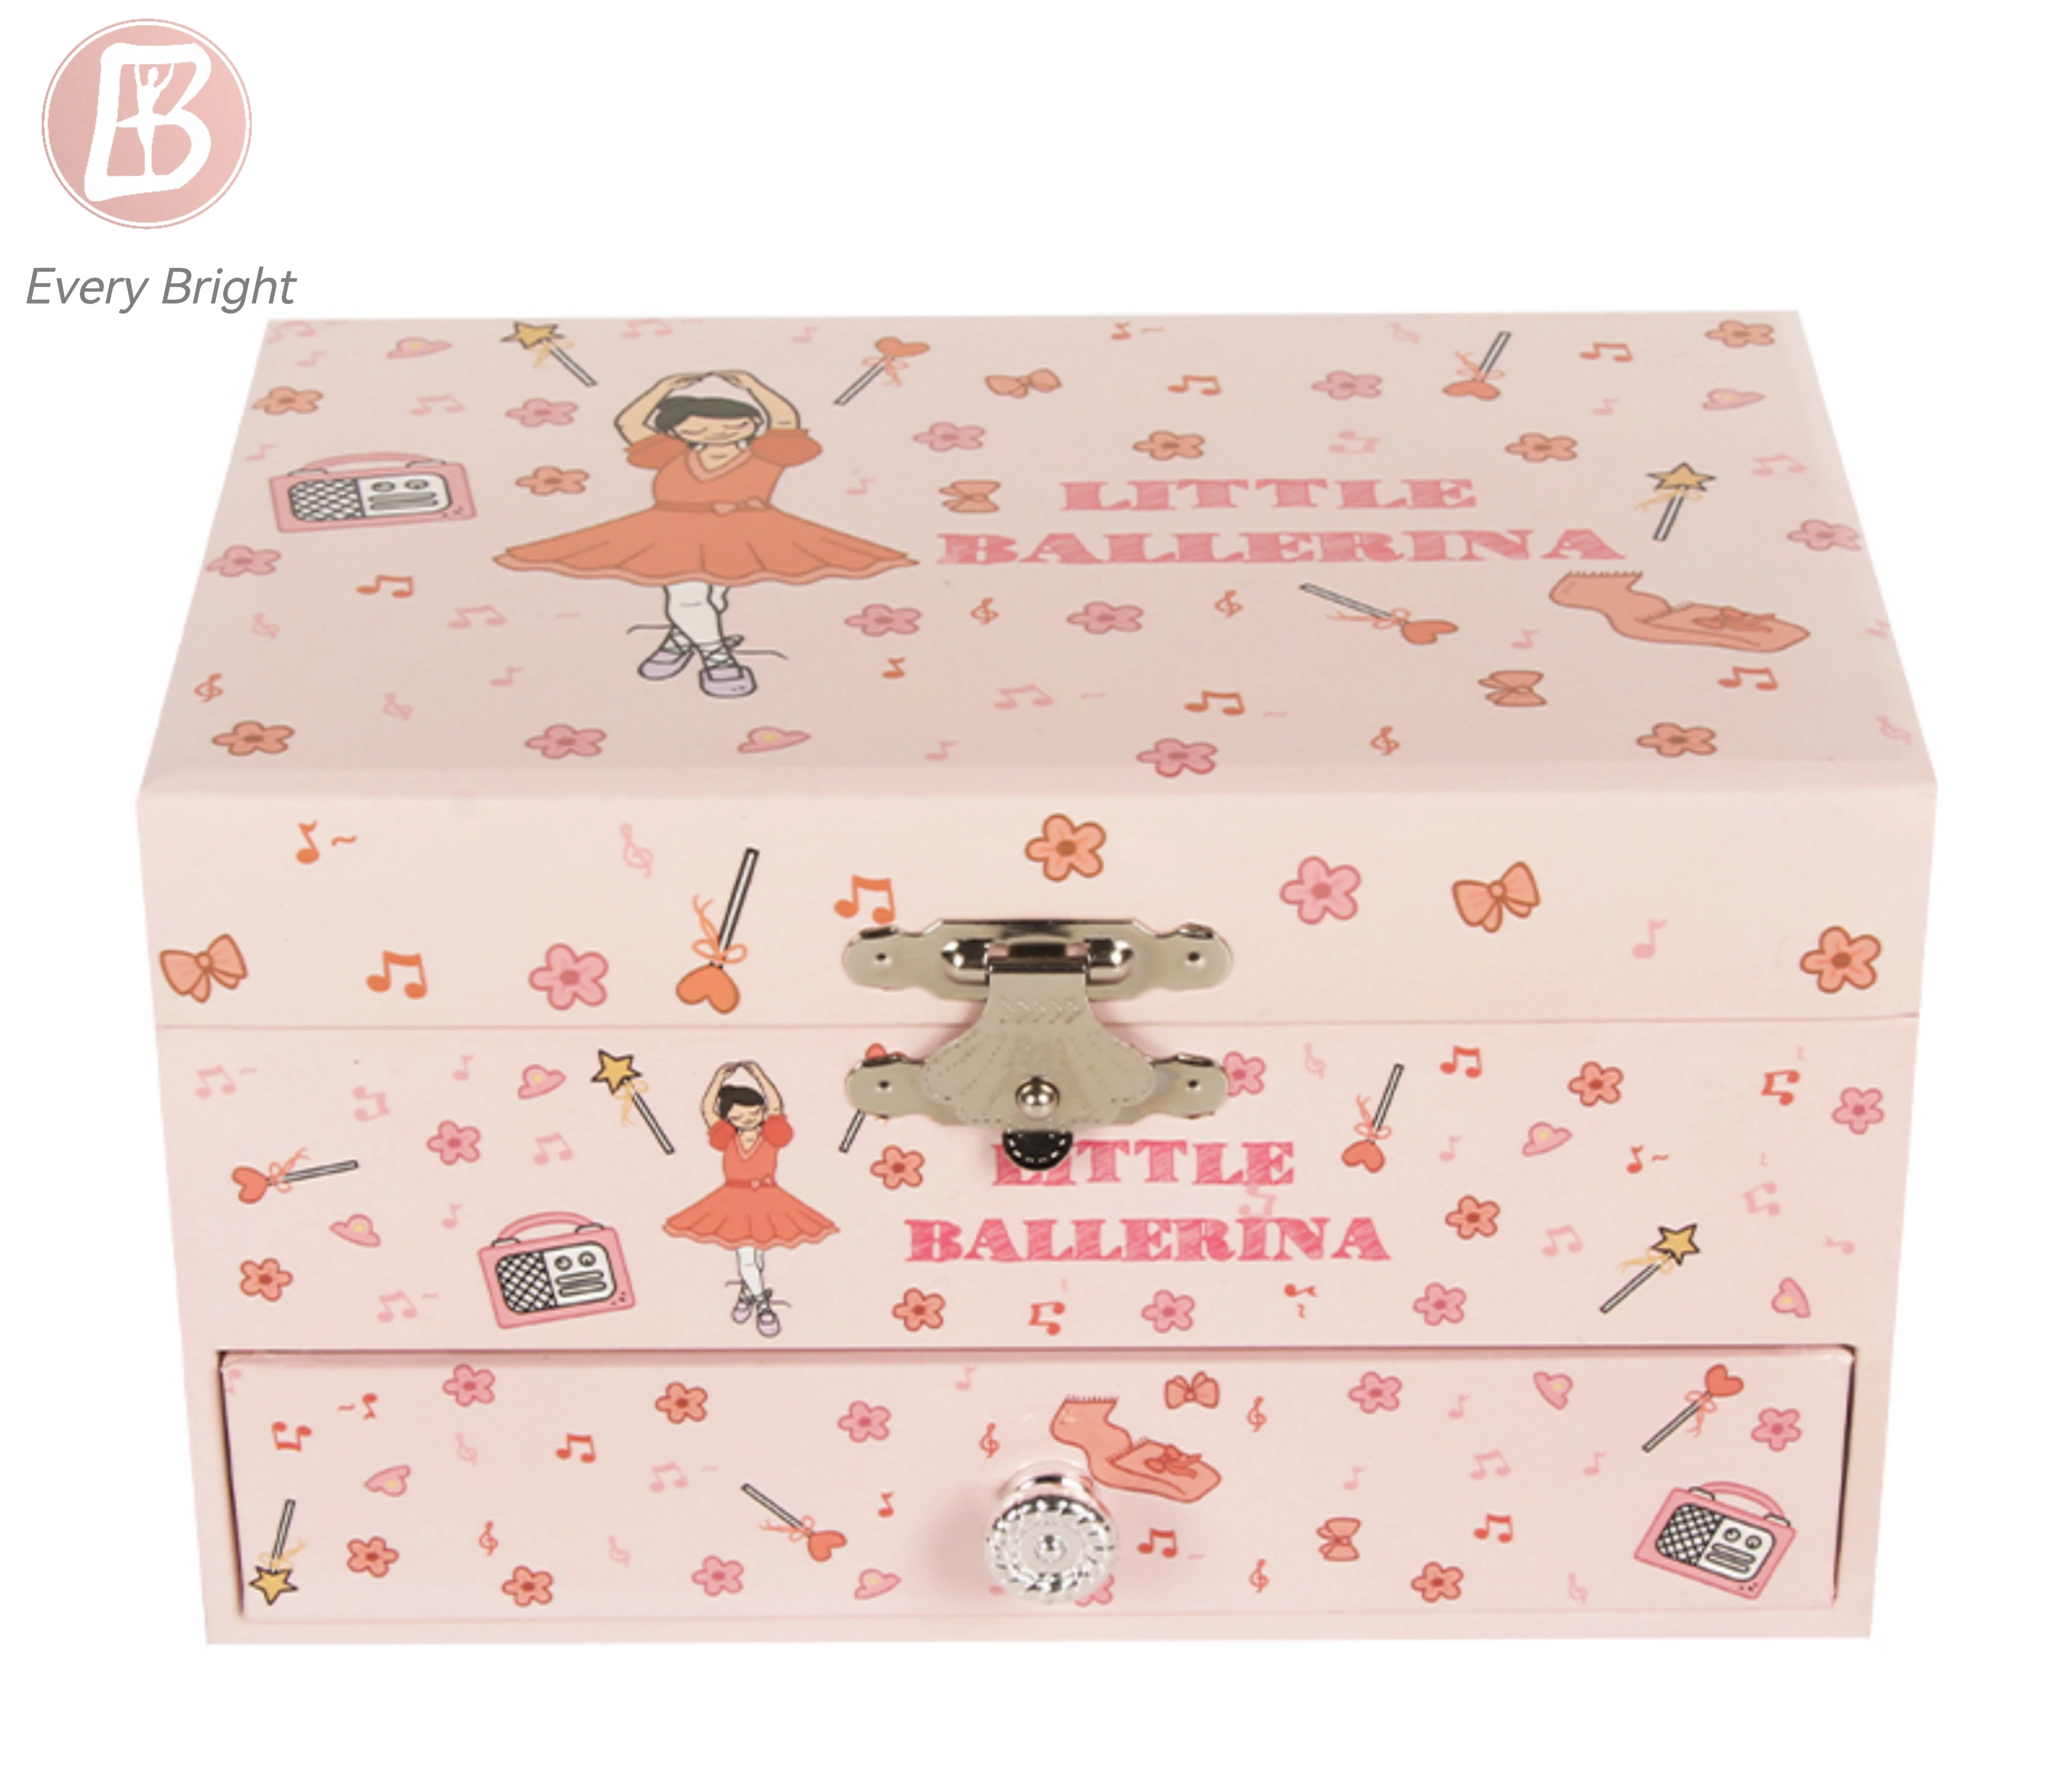 Ever Bright Custom Little Girls Pink Handmade Musical Jewellery Dancing Unicorn Ballerina Jewelry Music Box